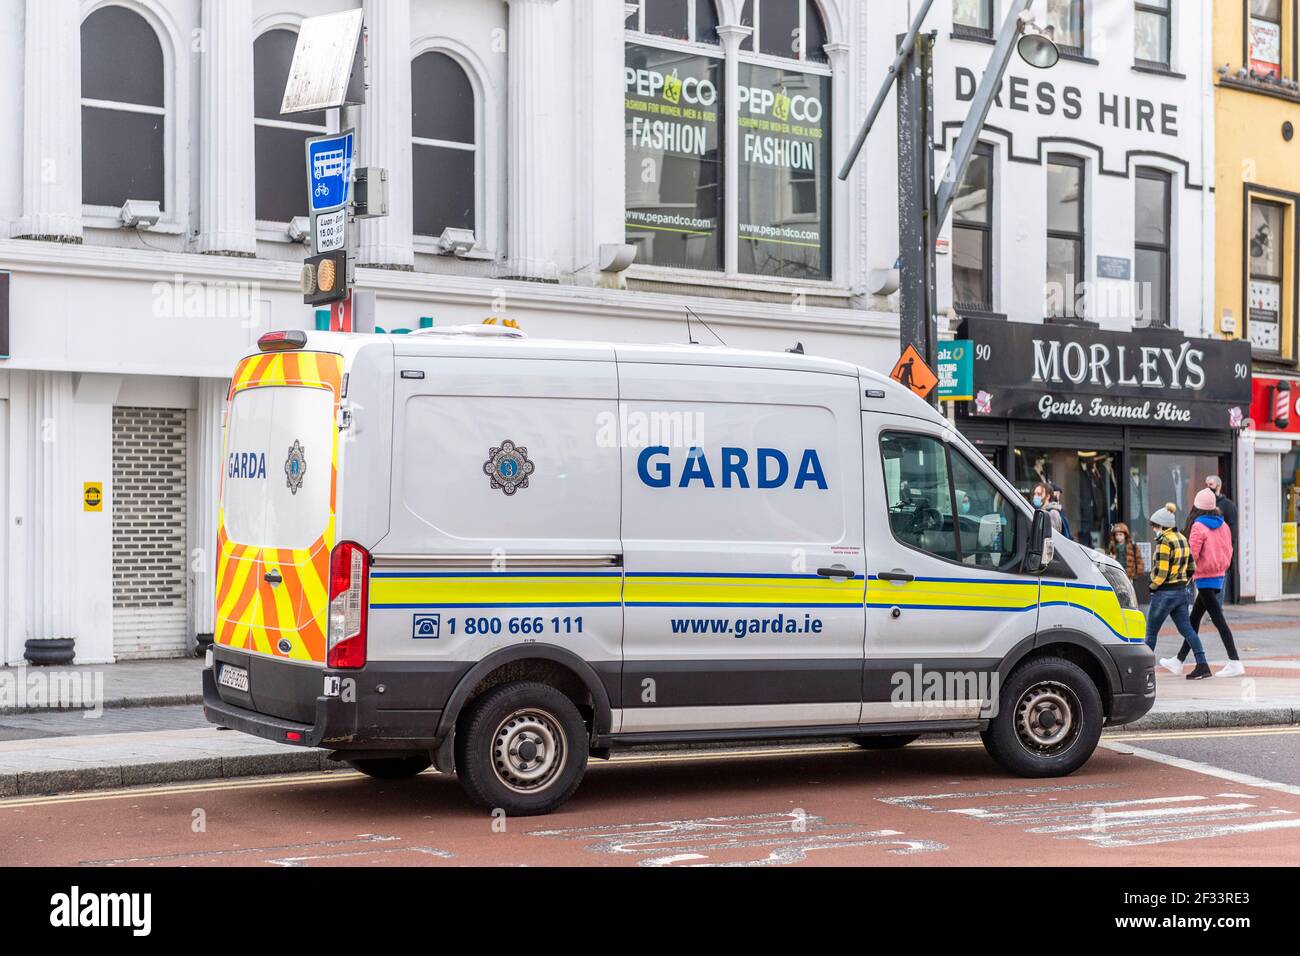 Garda (Irish Police) van geparkt in Cork City Centre, Irland. Stockfoto